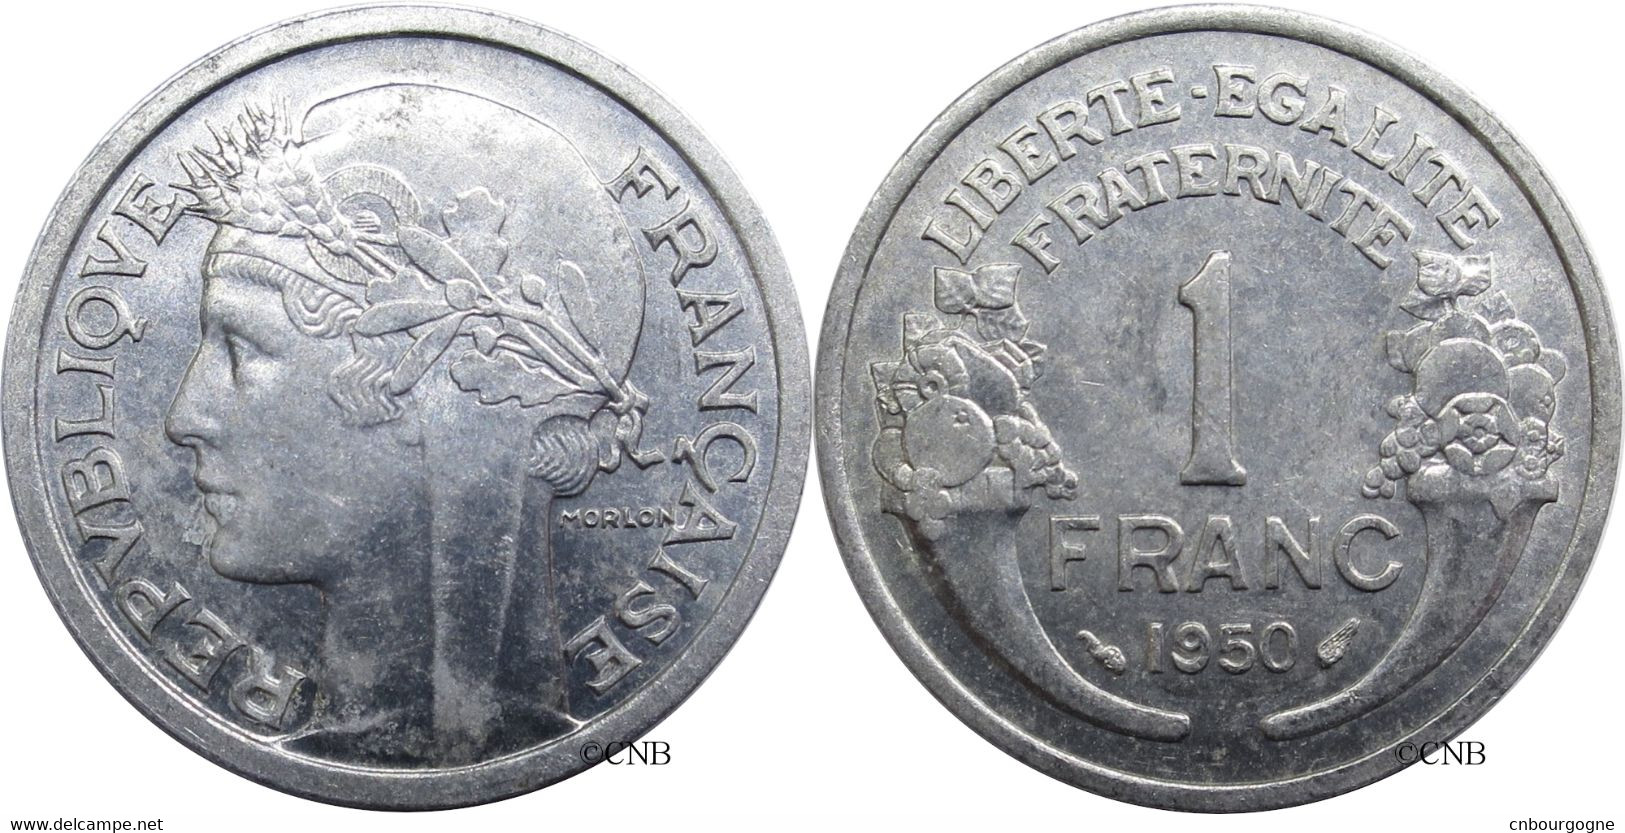 France - IVe République - 1 Franc Morlon Aluminium, Poids Léger 1950 - SUP/MS60 ! - Fra1677 - 1 Franc